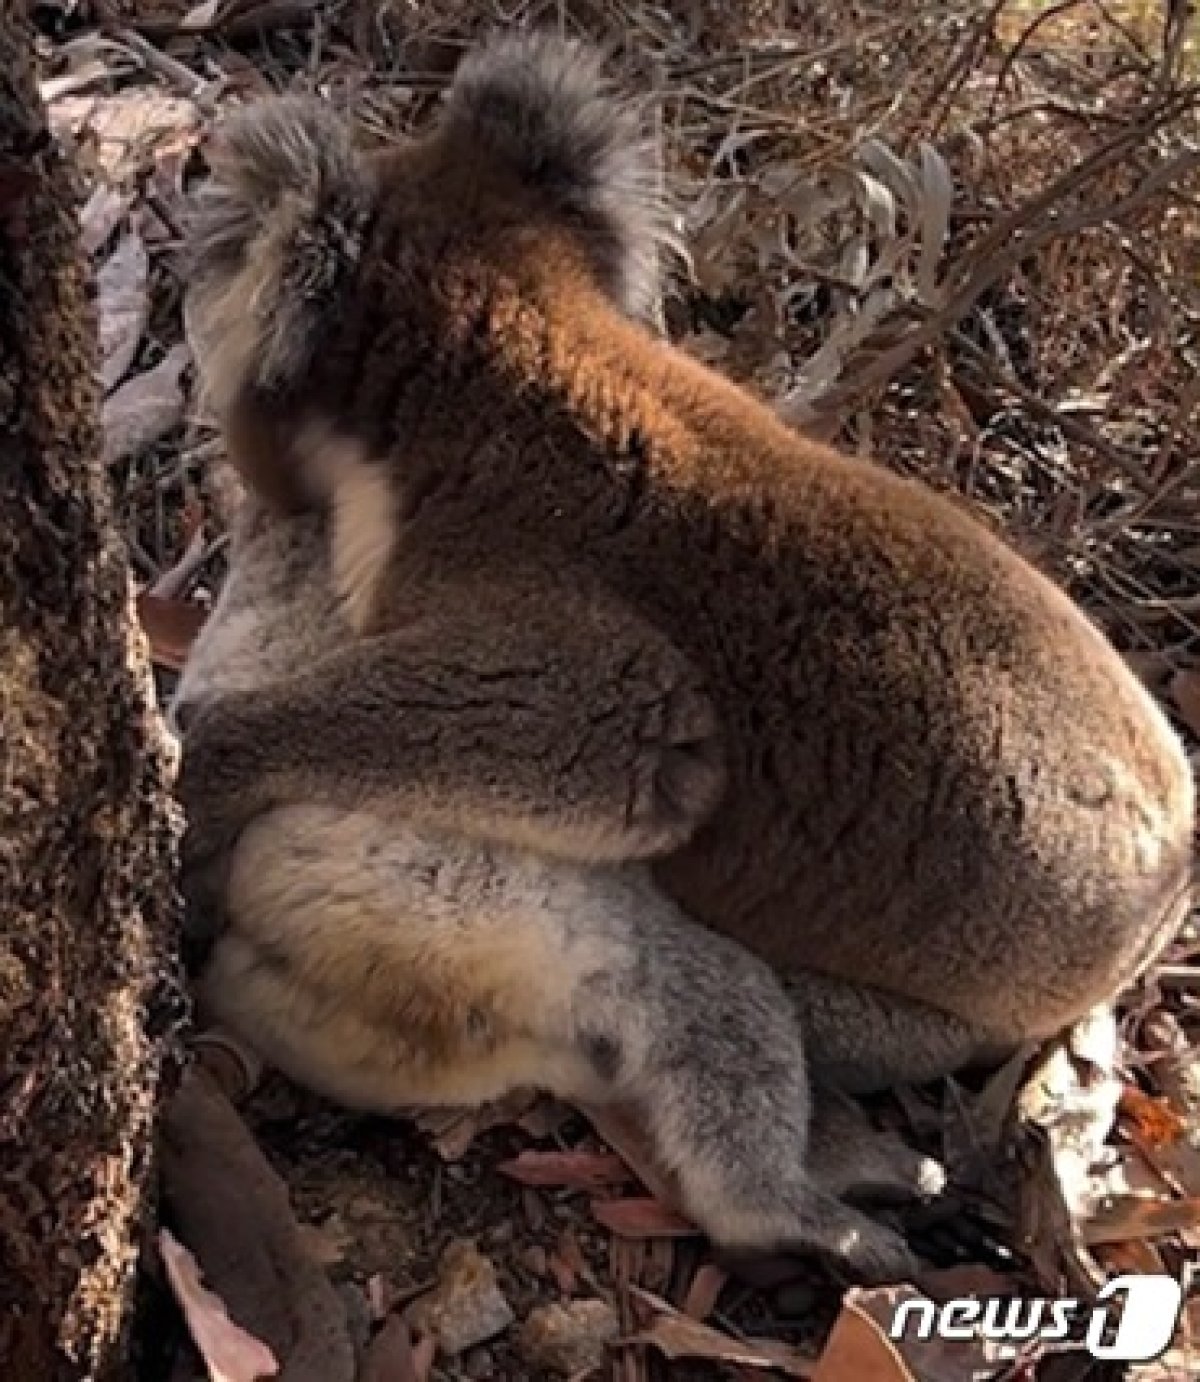 수컷 코알라가 쓰러진 암컷 코알라를 끌어안고 있다. 호주 동물보호단체 '코알라 레스큐' 영상 갈무리.